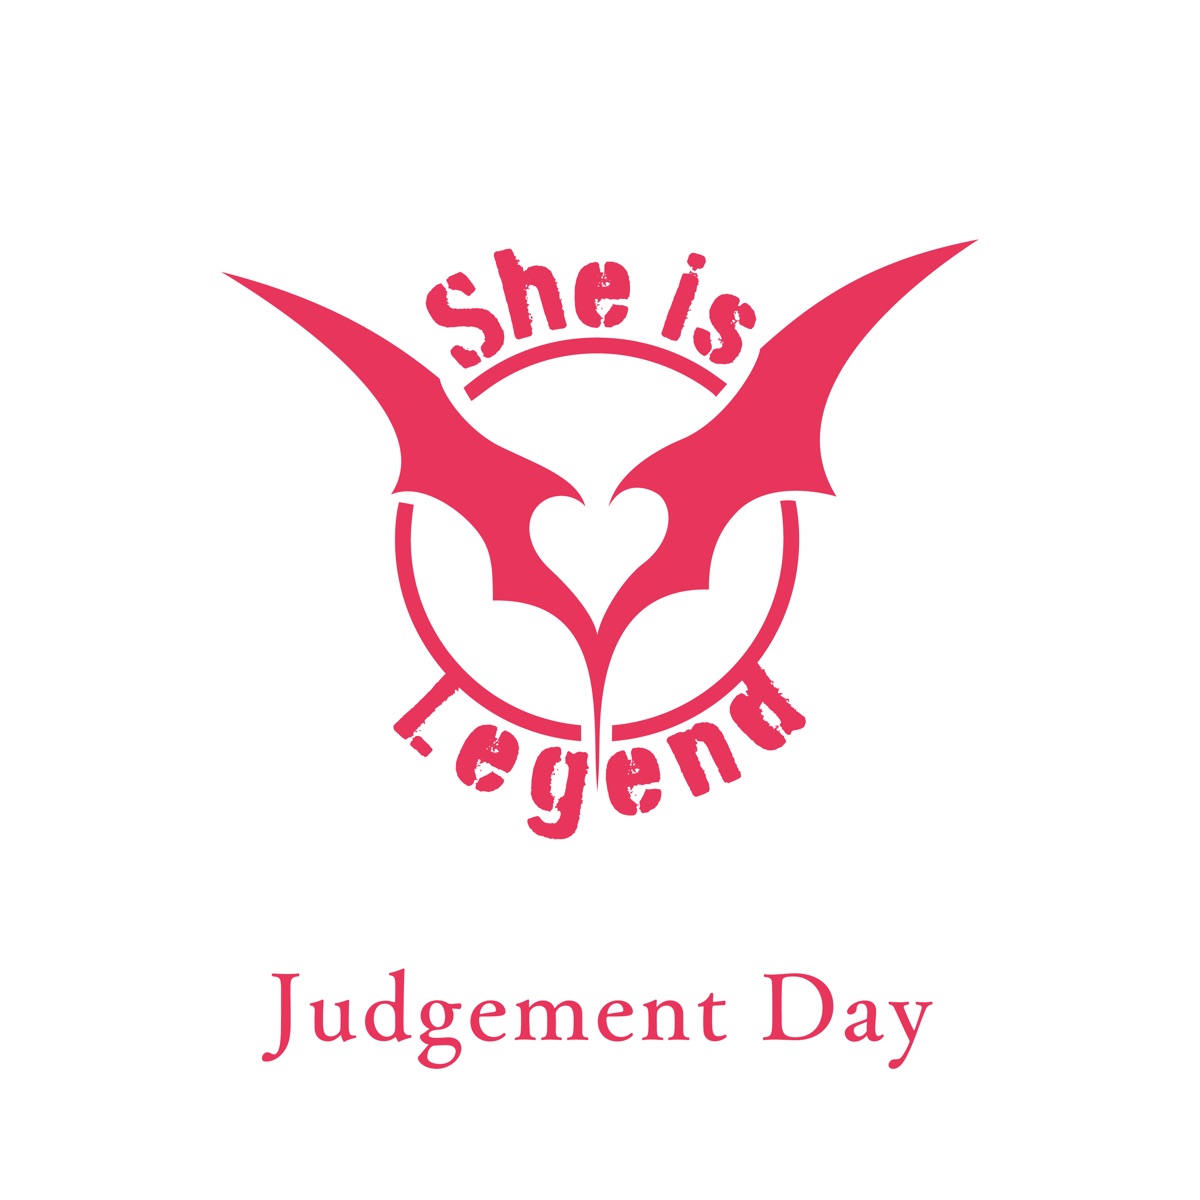 『She is Legend - Judgement Day』収録の『Judgement Day』ジャケット